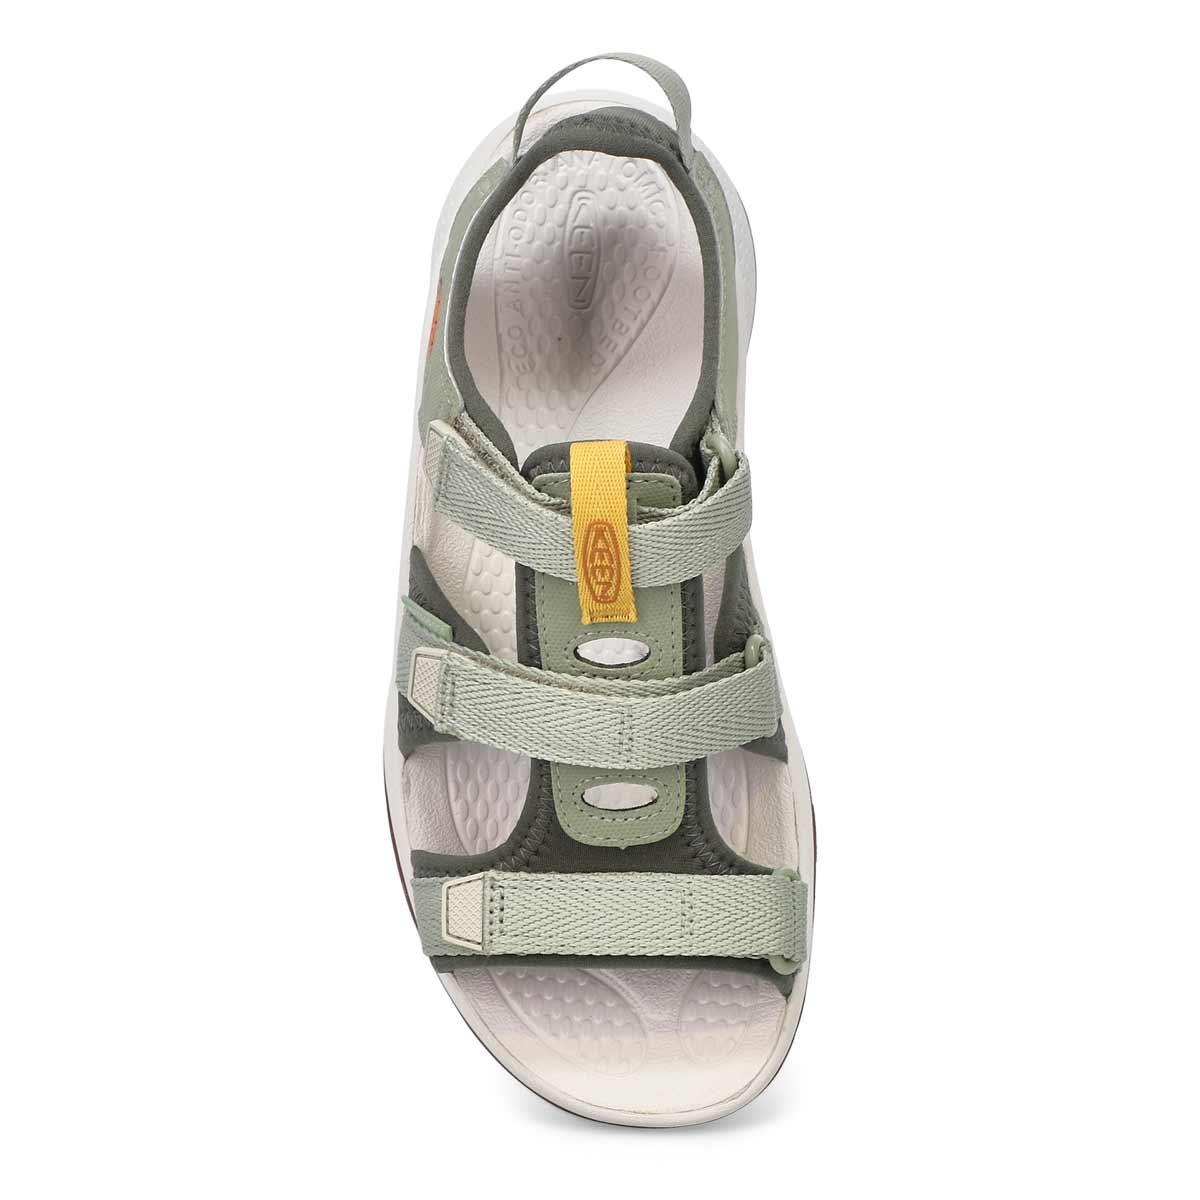 Women's Astoria West Open Toe Sandals - Sage/Grey